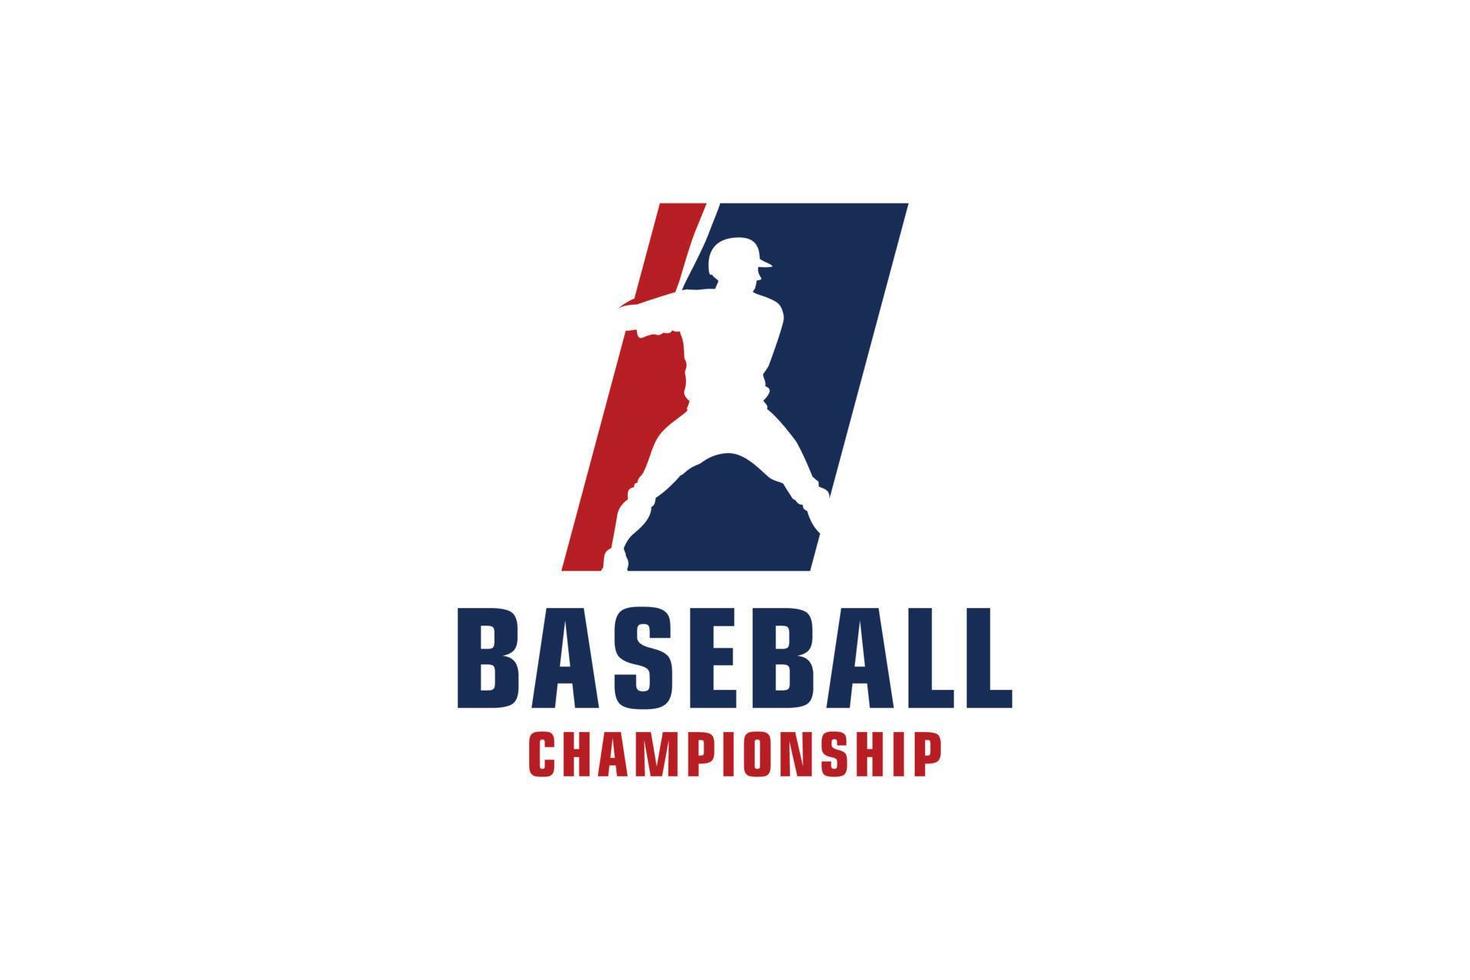 lettera i con design del logo di baseball. elementi del modello di progettazione vettoriale per la squadra sportiva o l'identità aziendale.